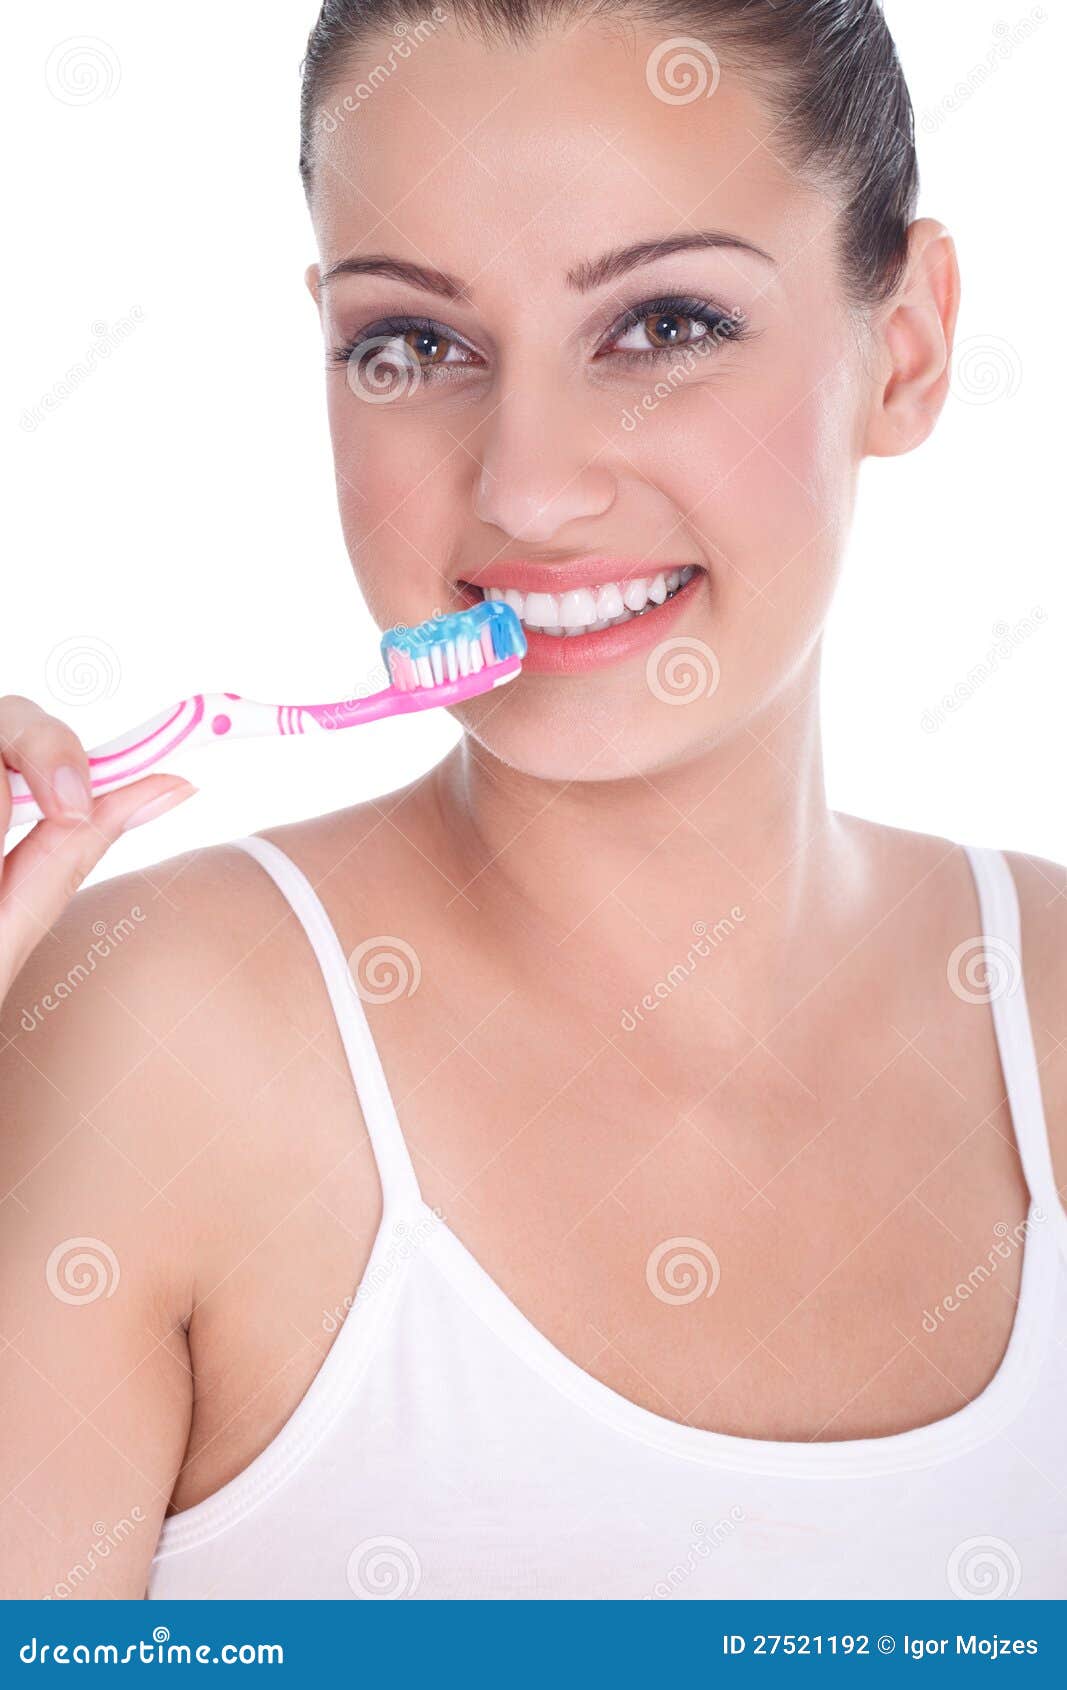 刷她的牙的美丽的少妇. 刷她理想的牙的美丽的少妇